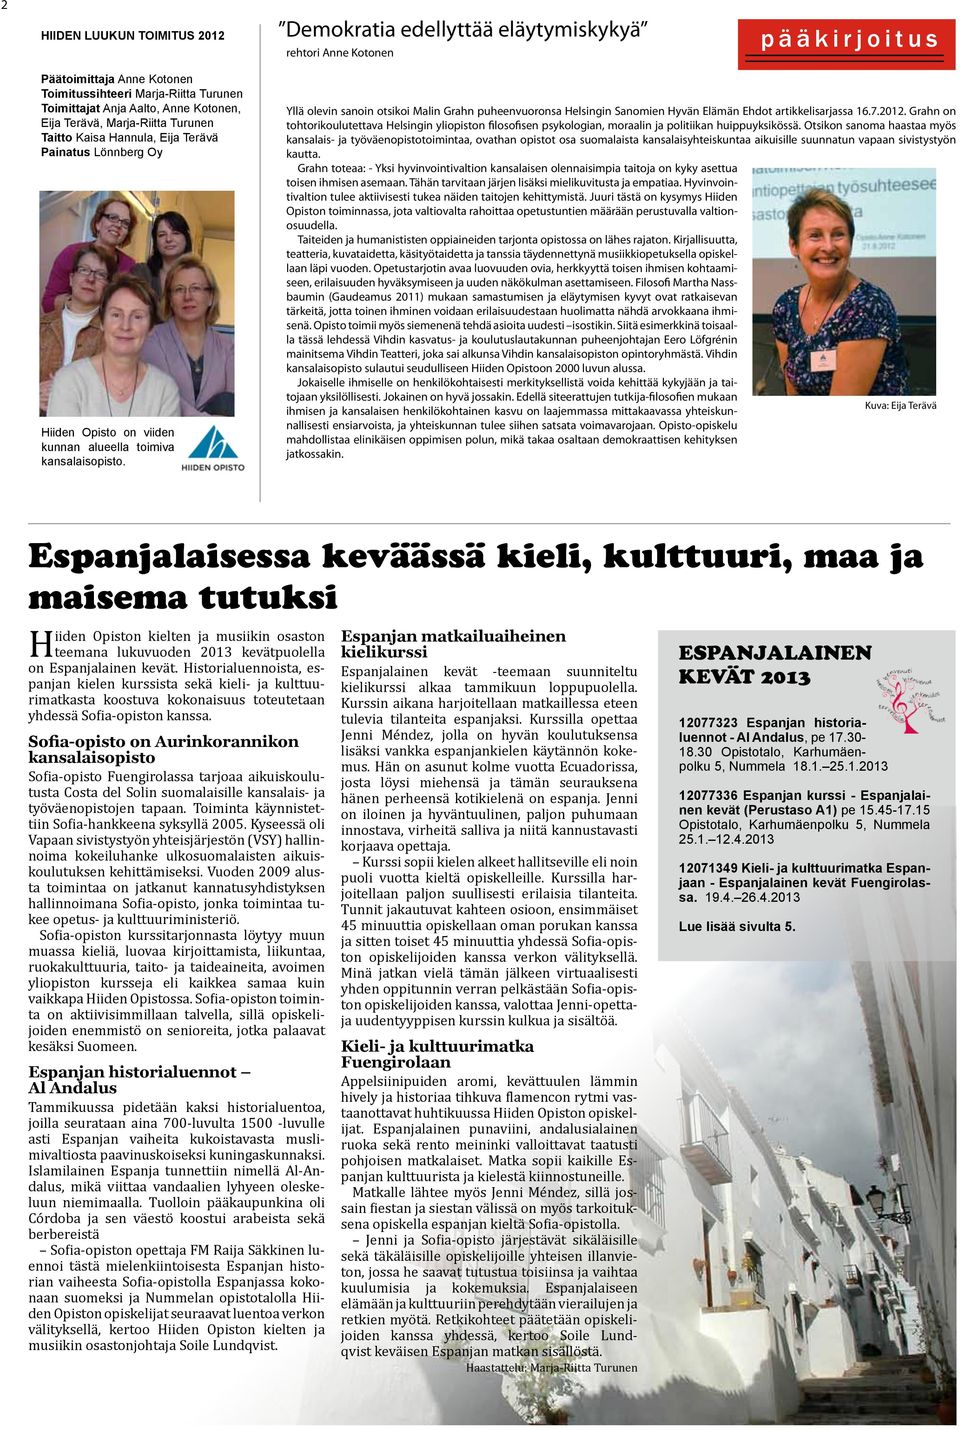 Yllä olevin sanoin otsikoi Malin Grahn puheenvuoronsa Helsingin Sanomien Hyvän Elämän Ehdot artikkelisarjassa 16.7.2012.